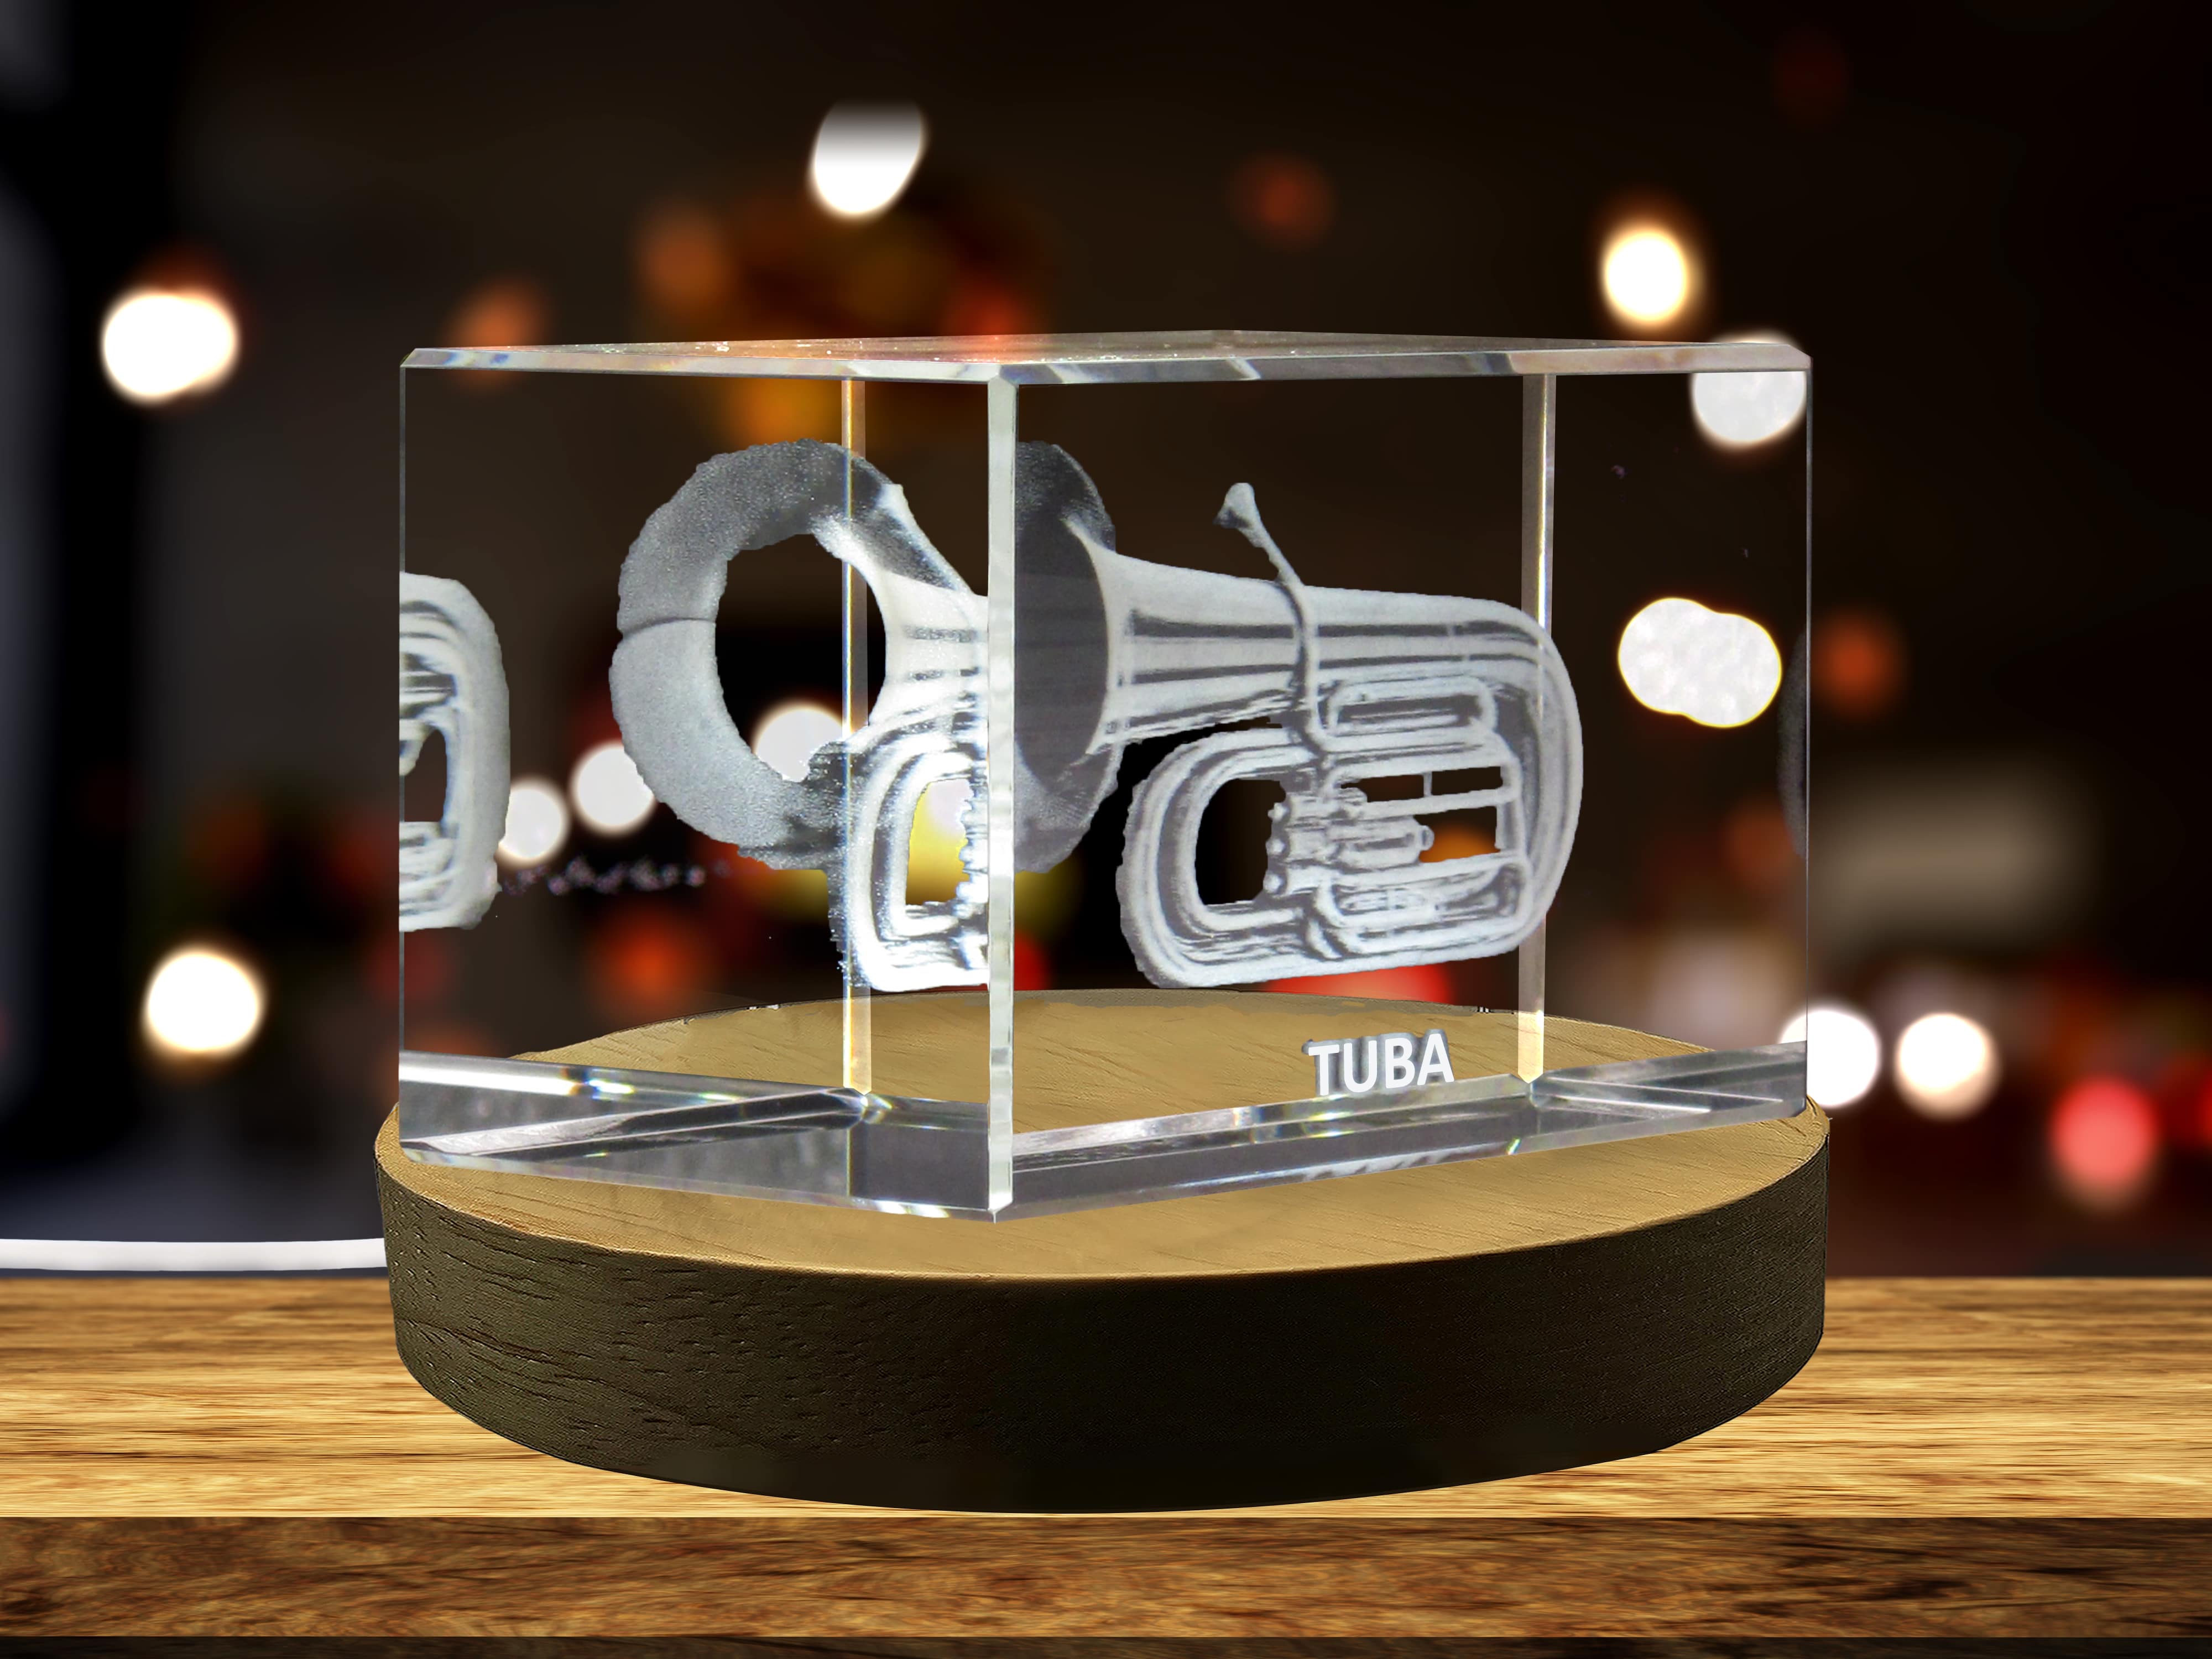 Tuba 3D Engraved Crystal 3D Engraved Crystal Keepsake/Gift/Decor/Collectible/Souvenir A&B Crystal Collection